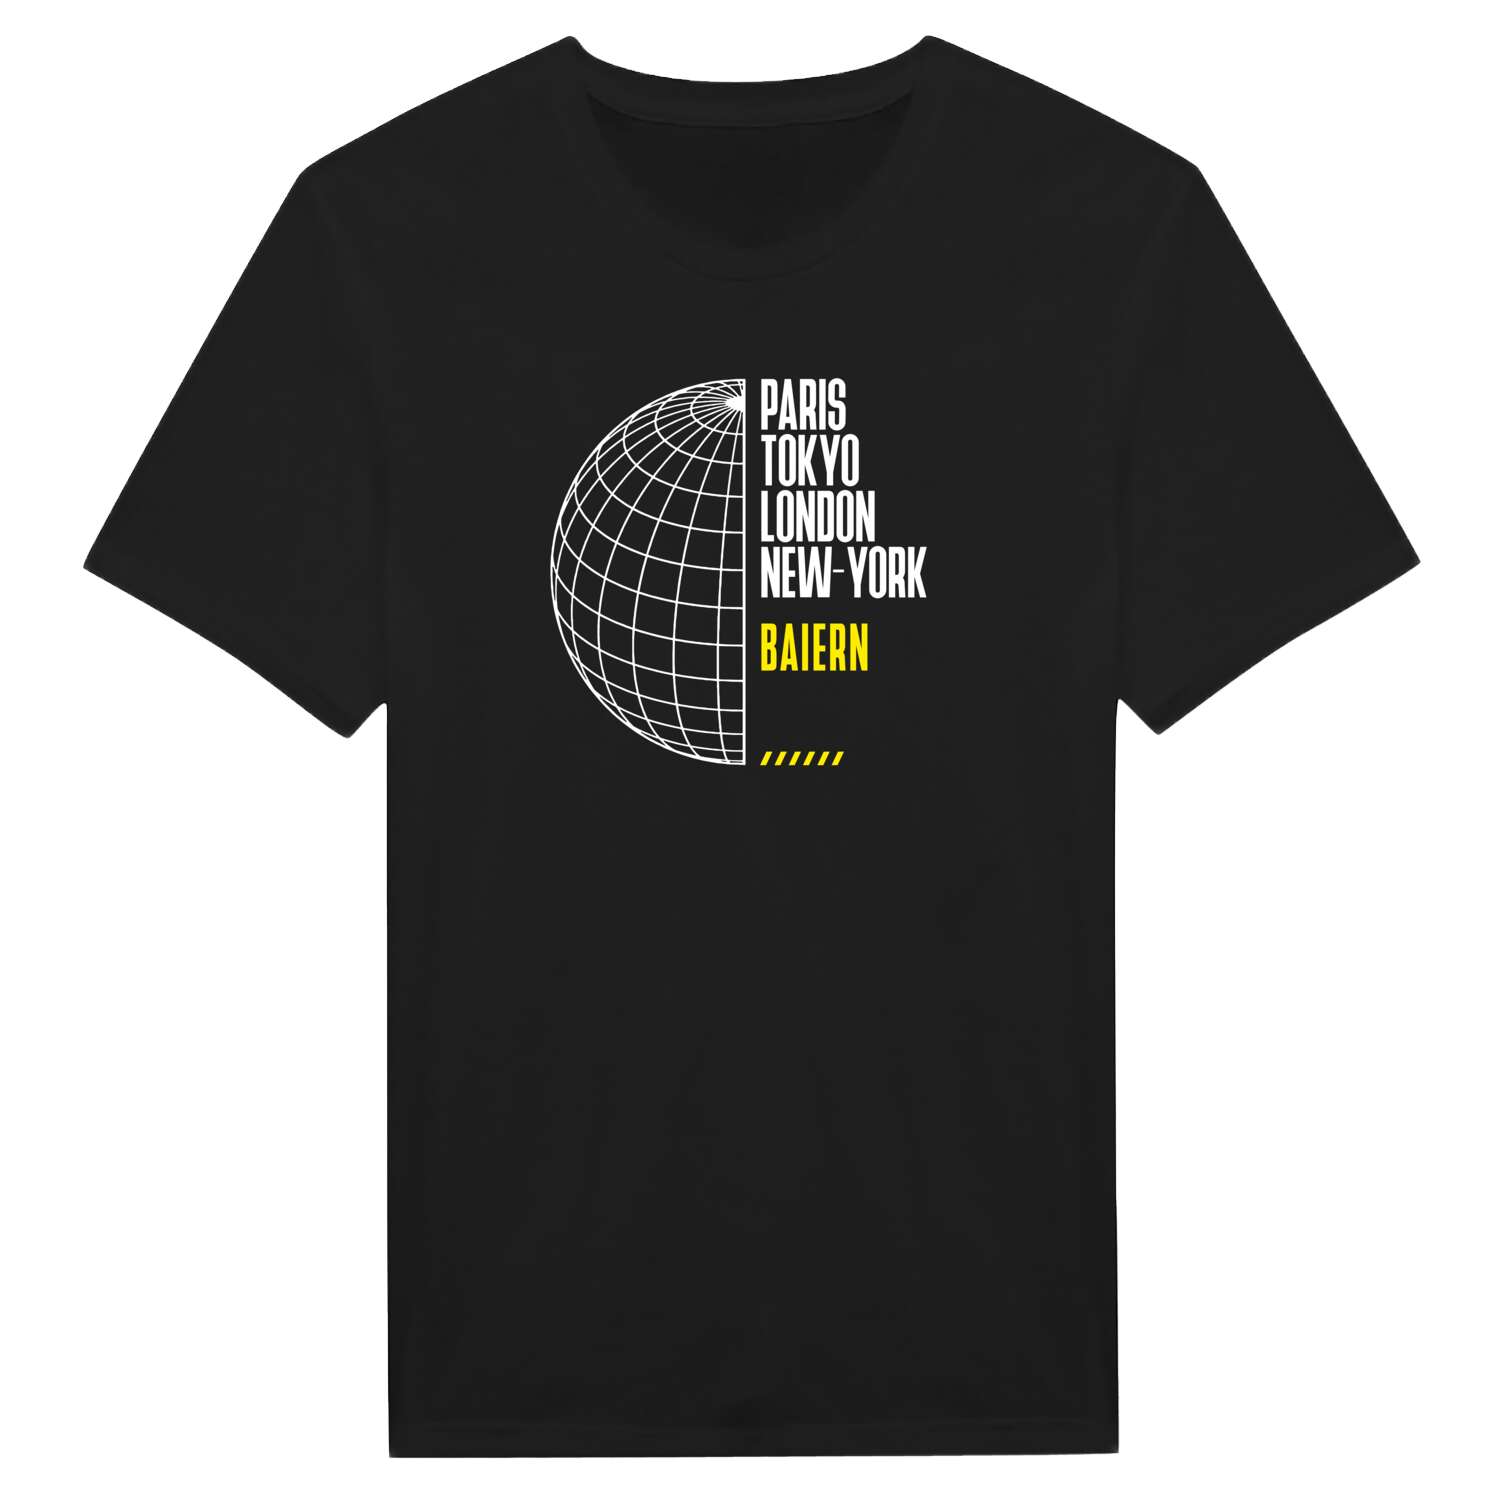 Baiern T-Shirt »Paris Tokyo London«